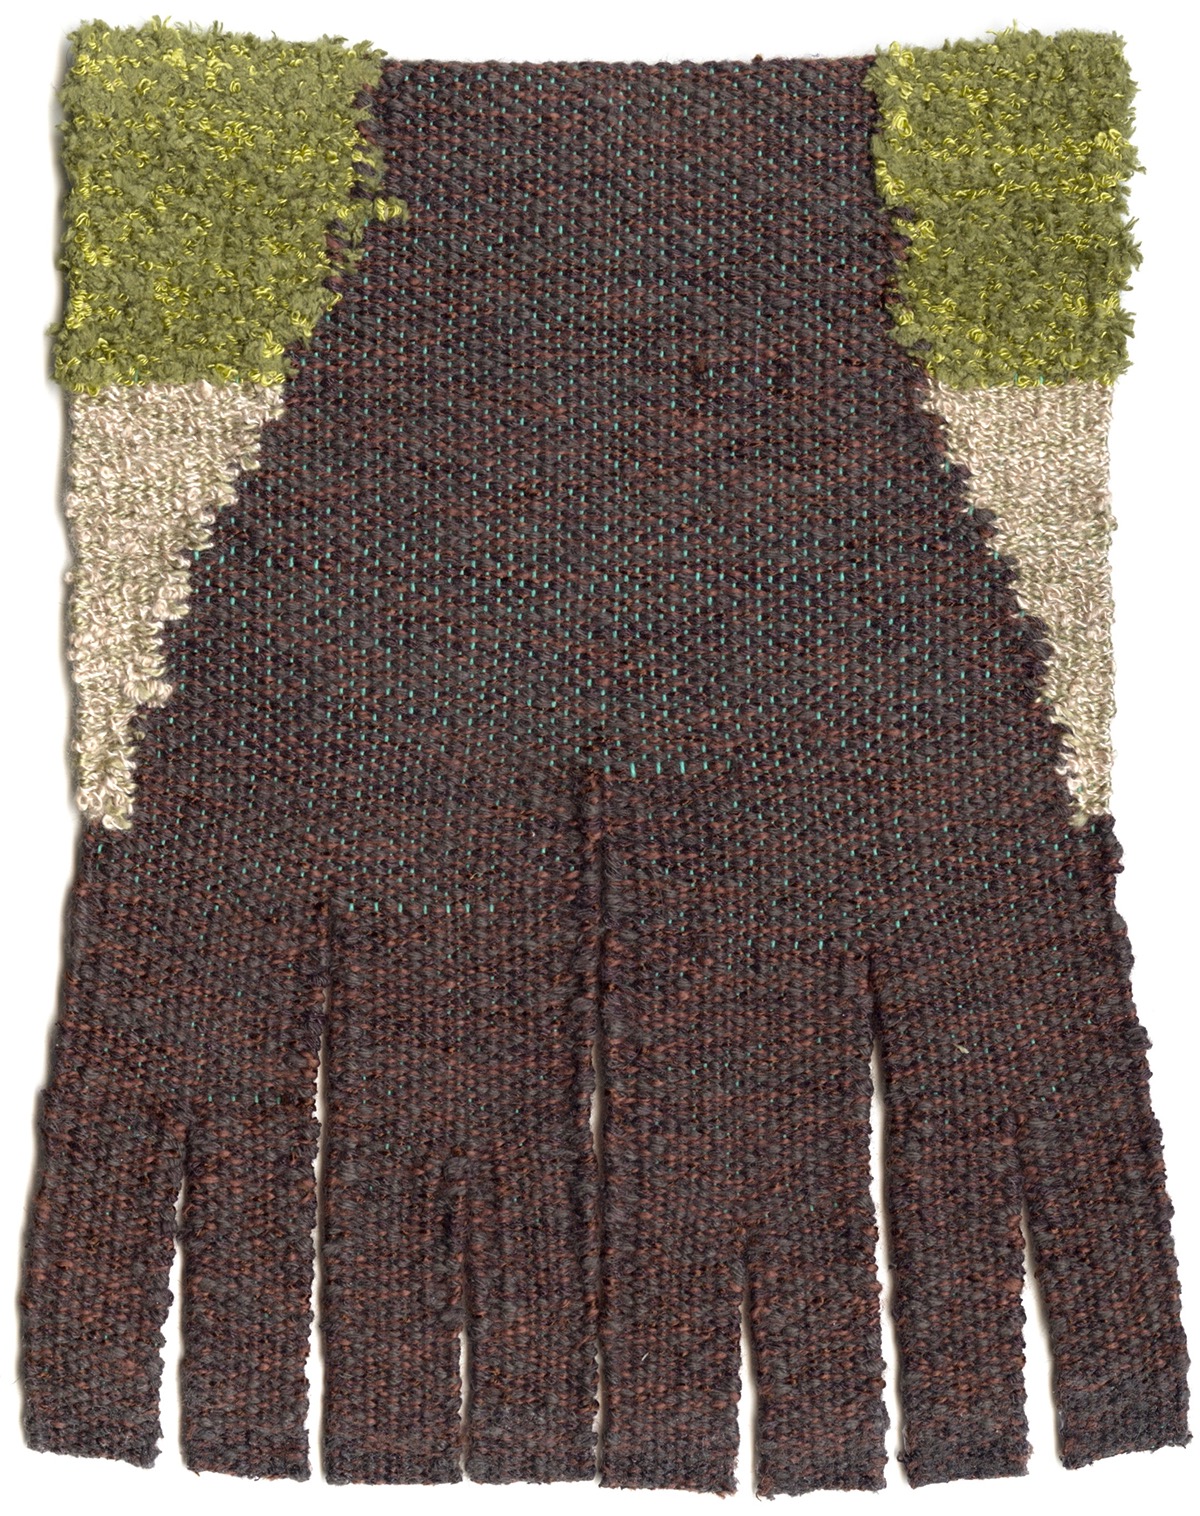 weaving Woven fibers fiber arts Textiles